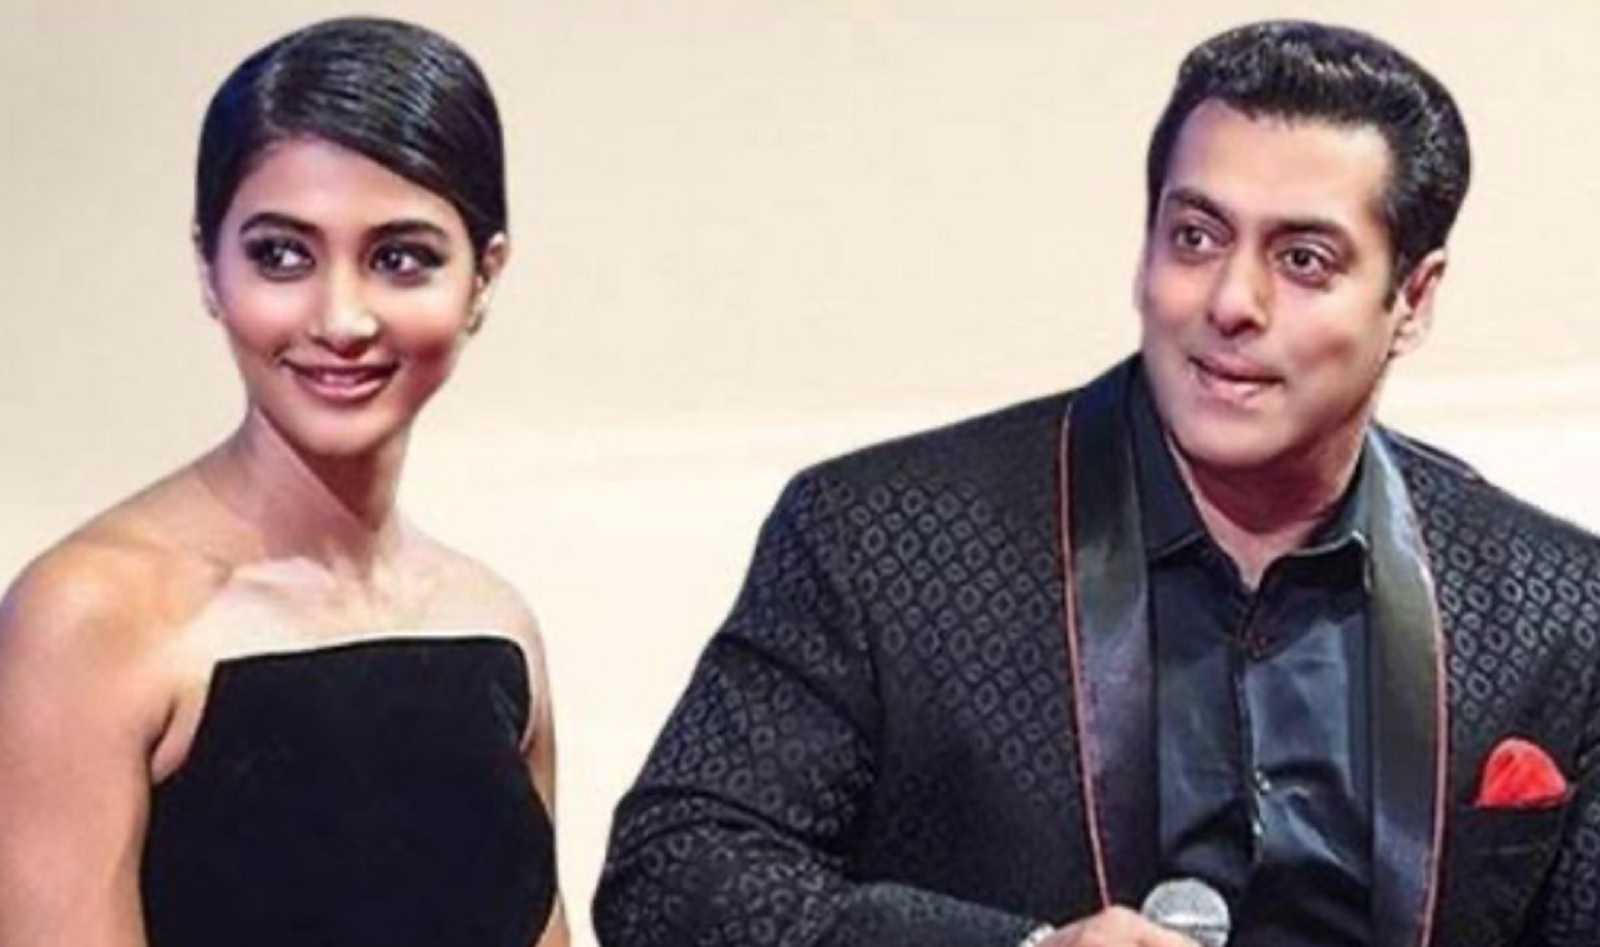 'Shera ke sath break up': Rumours of Salman Khan dating Pooja Hegde trigger meme fest on Twitter